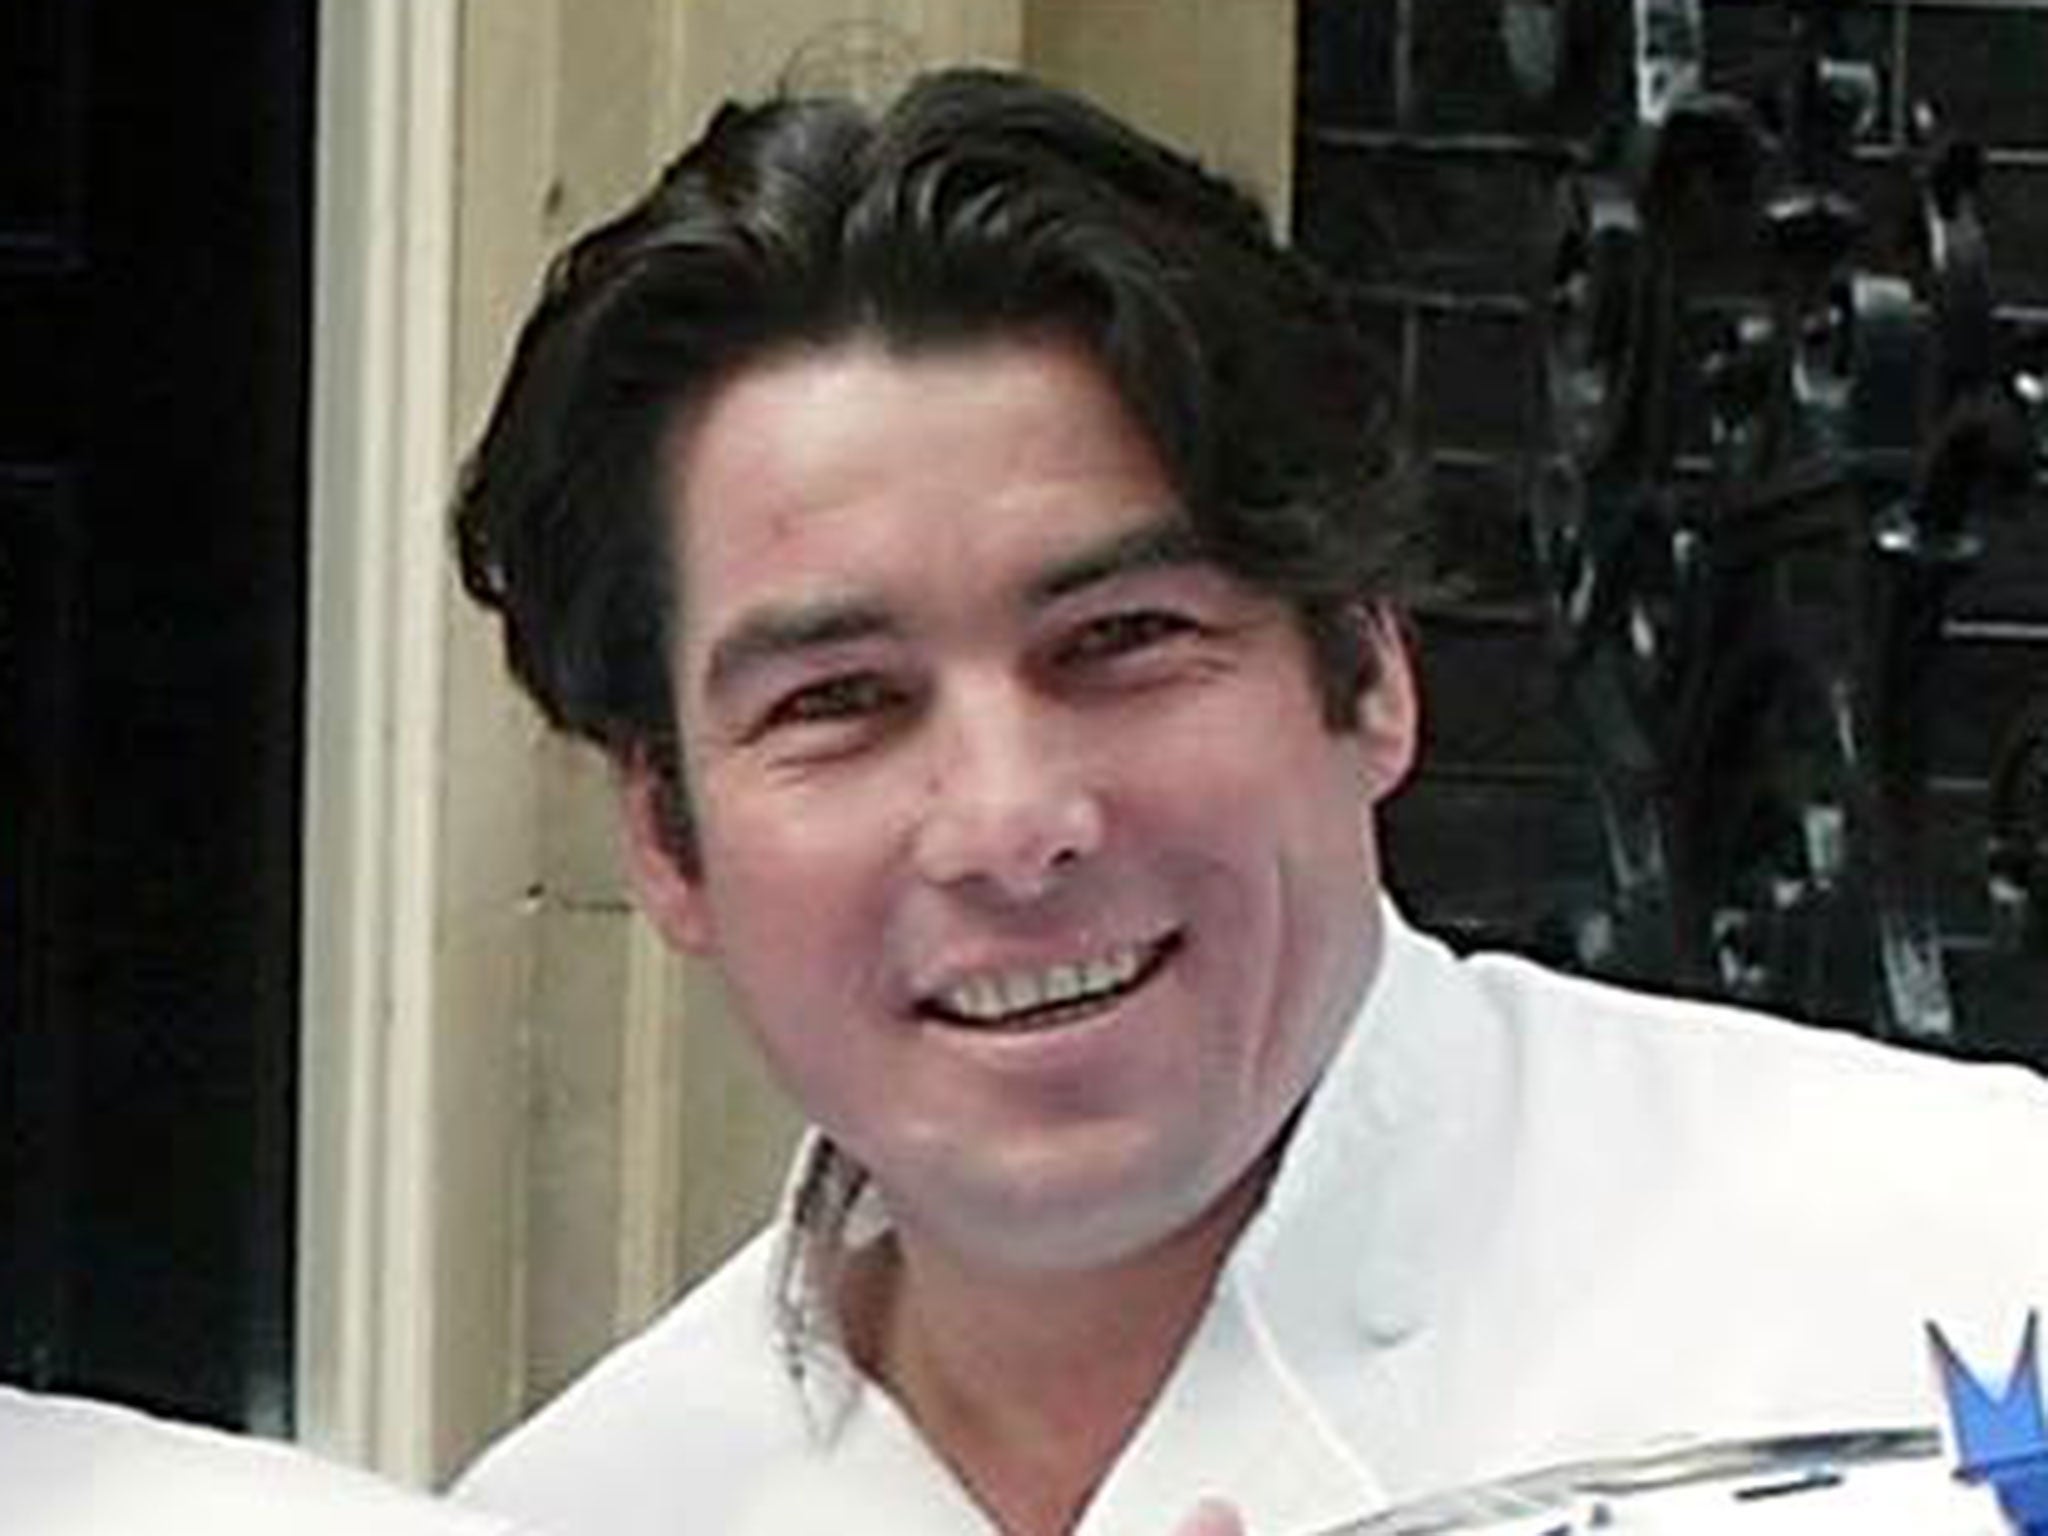 Ross Burden pictured in 2002